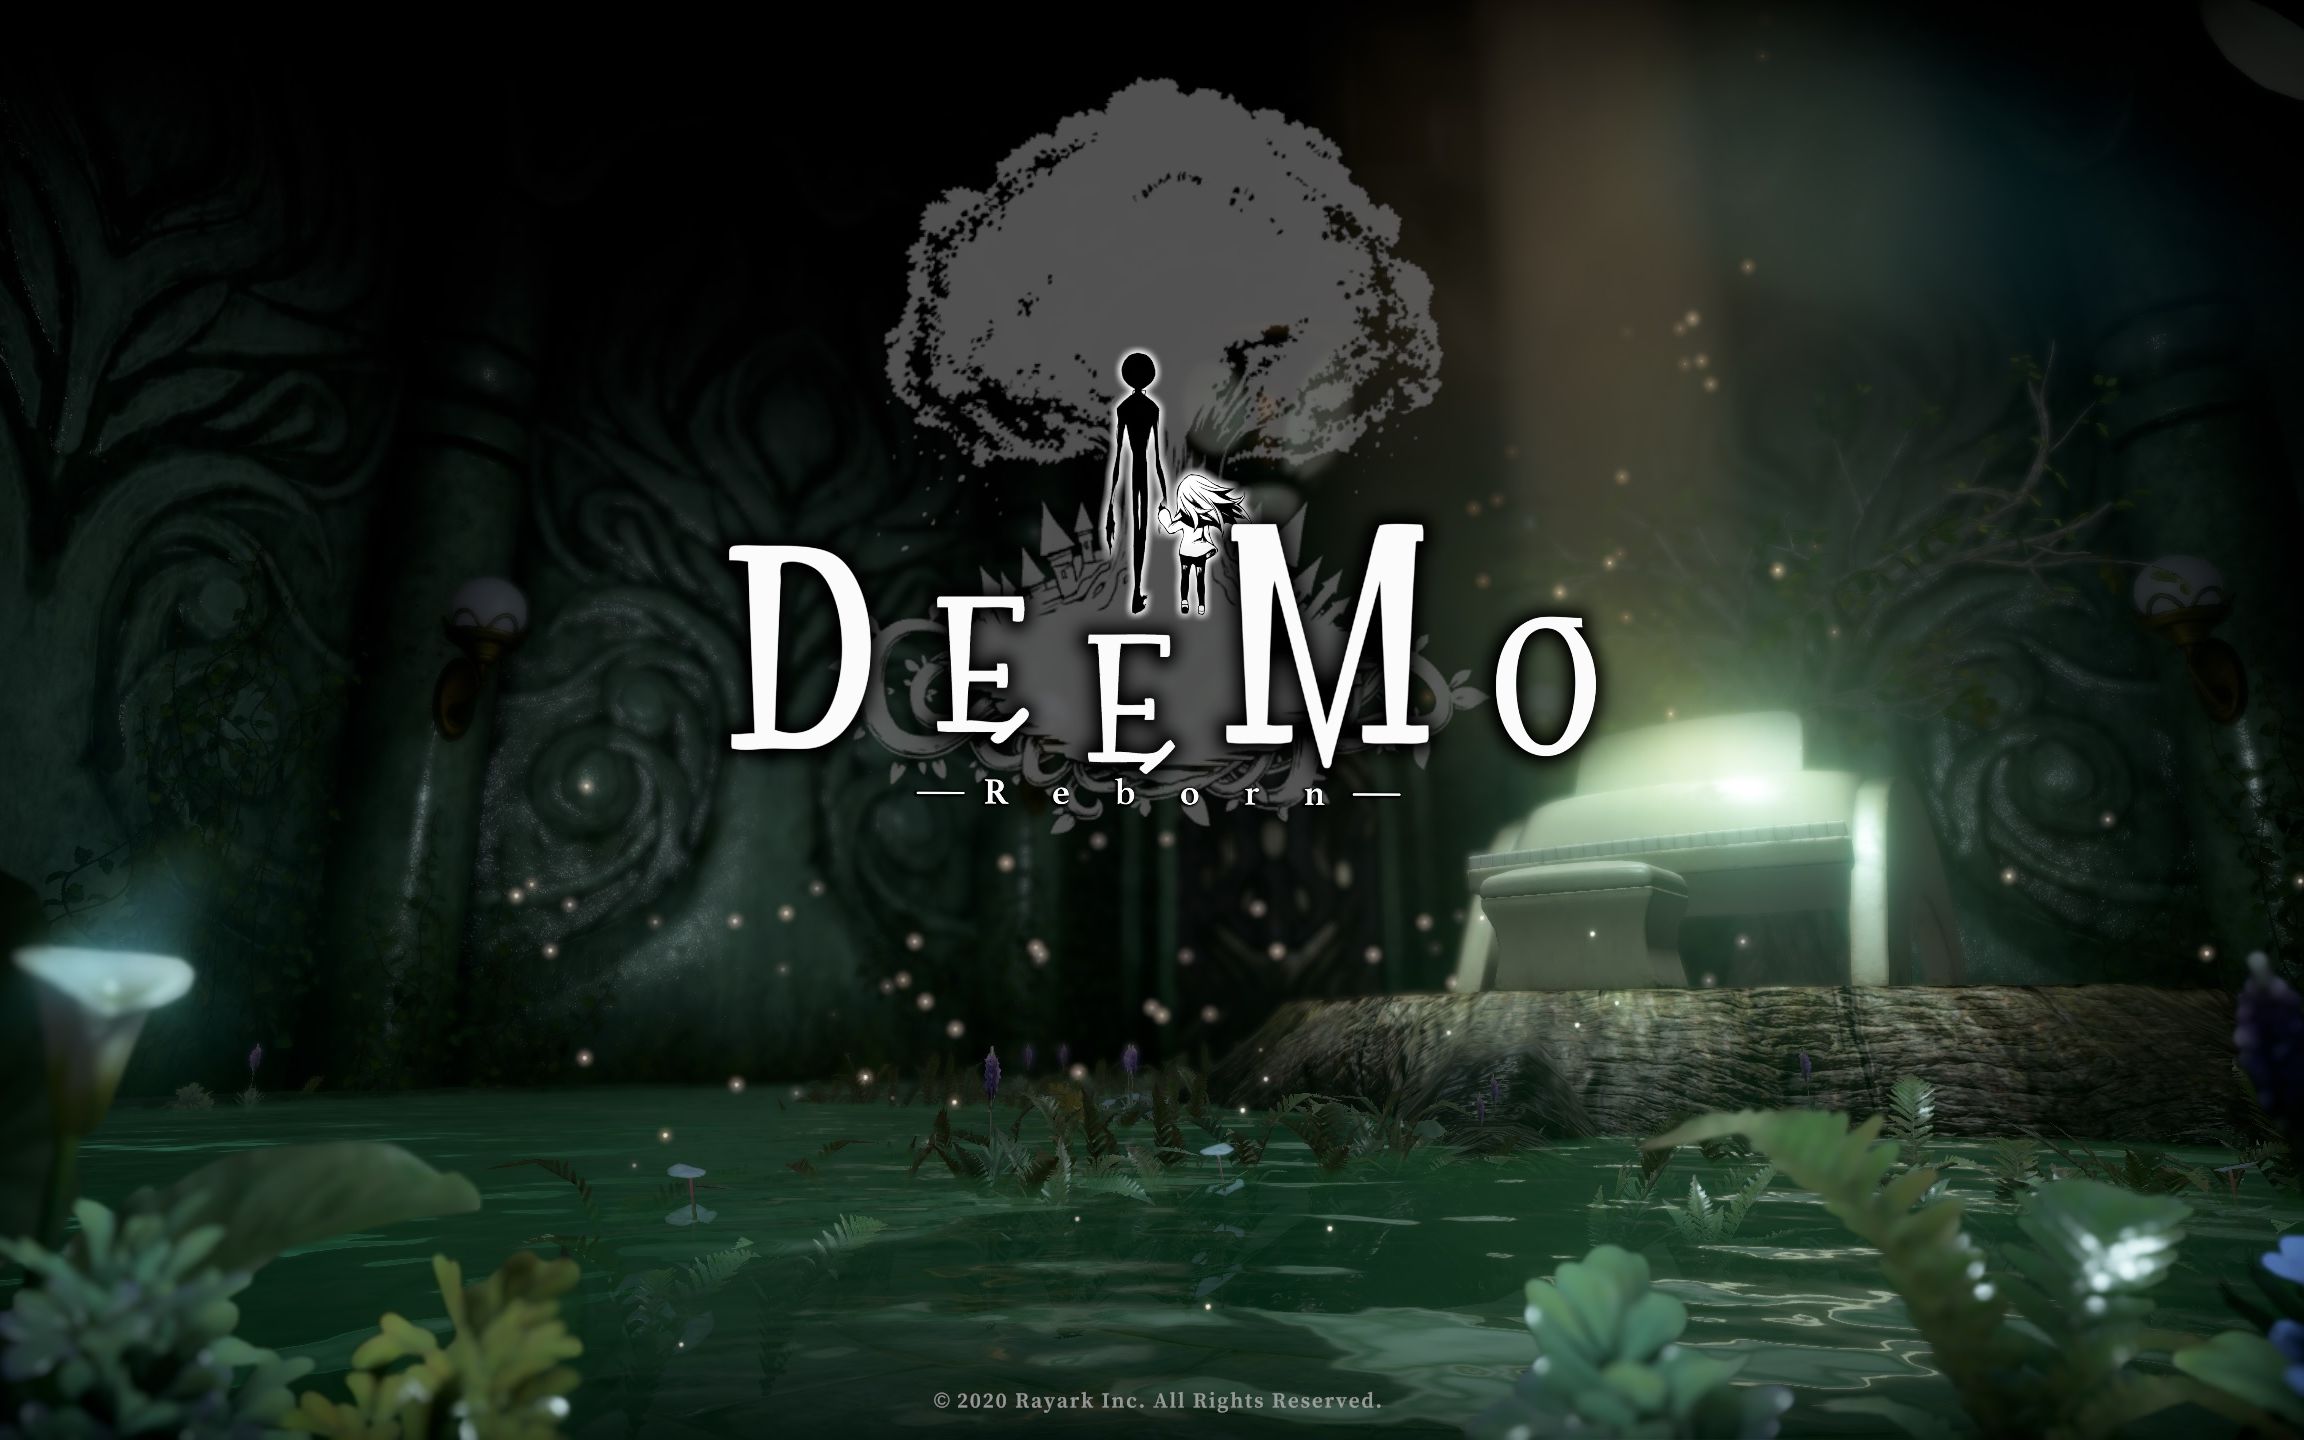 Deemo Ⅰ/古树旋律 玩法及剧情介绍 - 哔哩哔哩